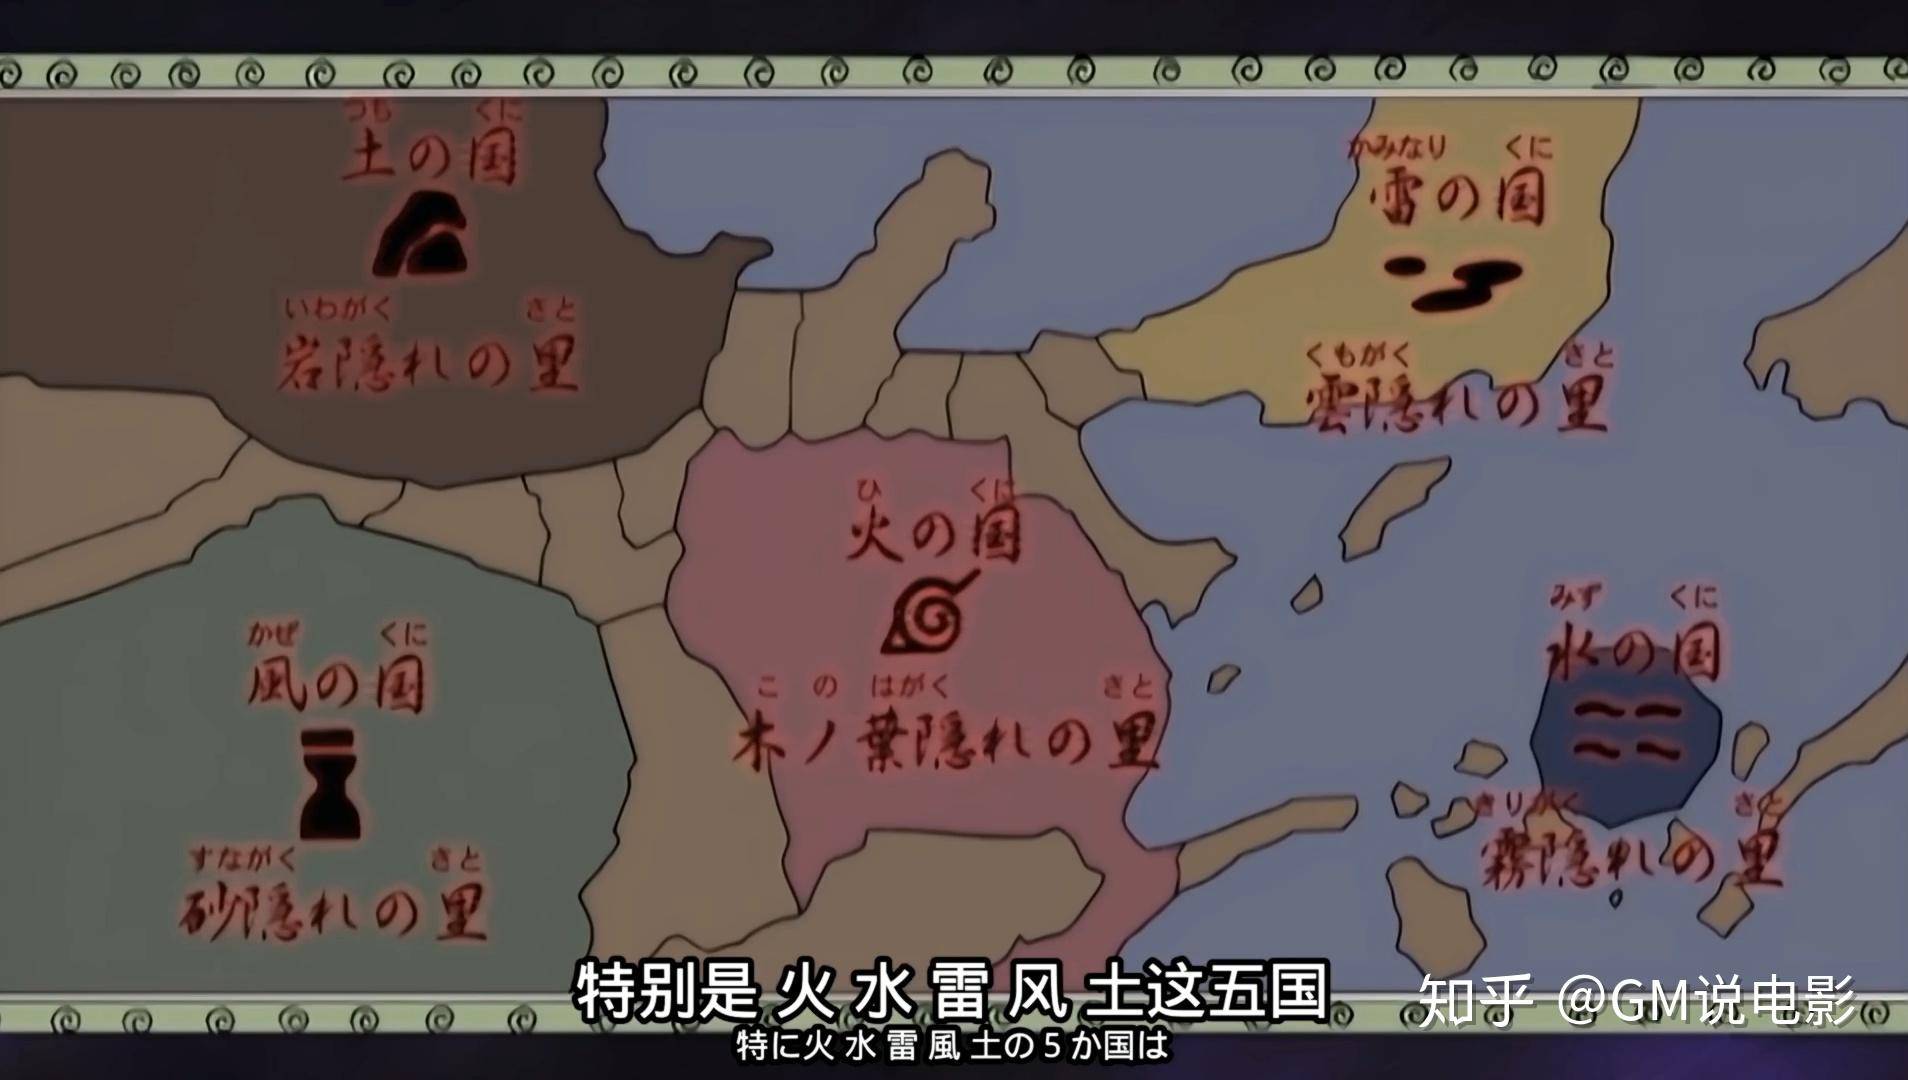 火影忍者地图 中文版图片